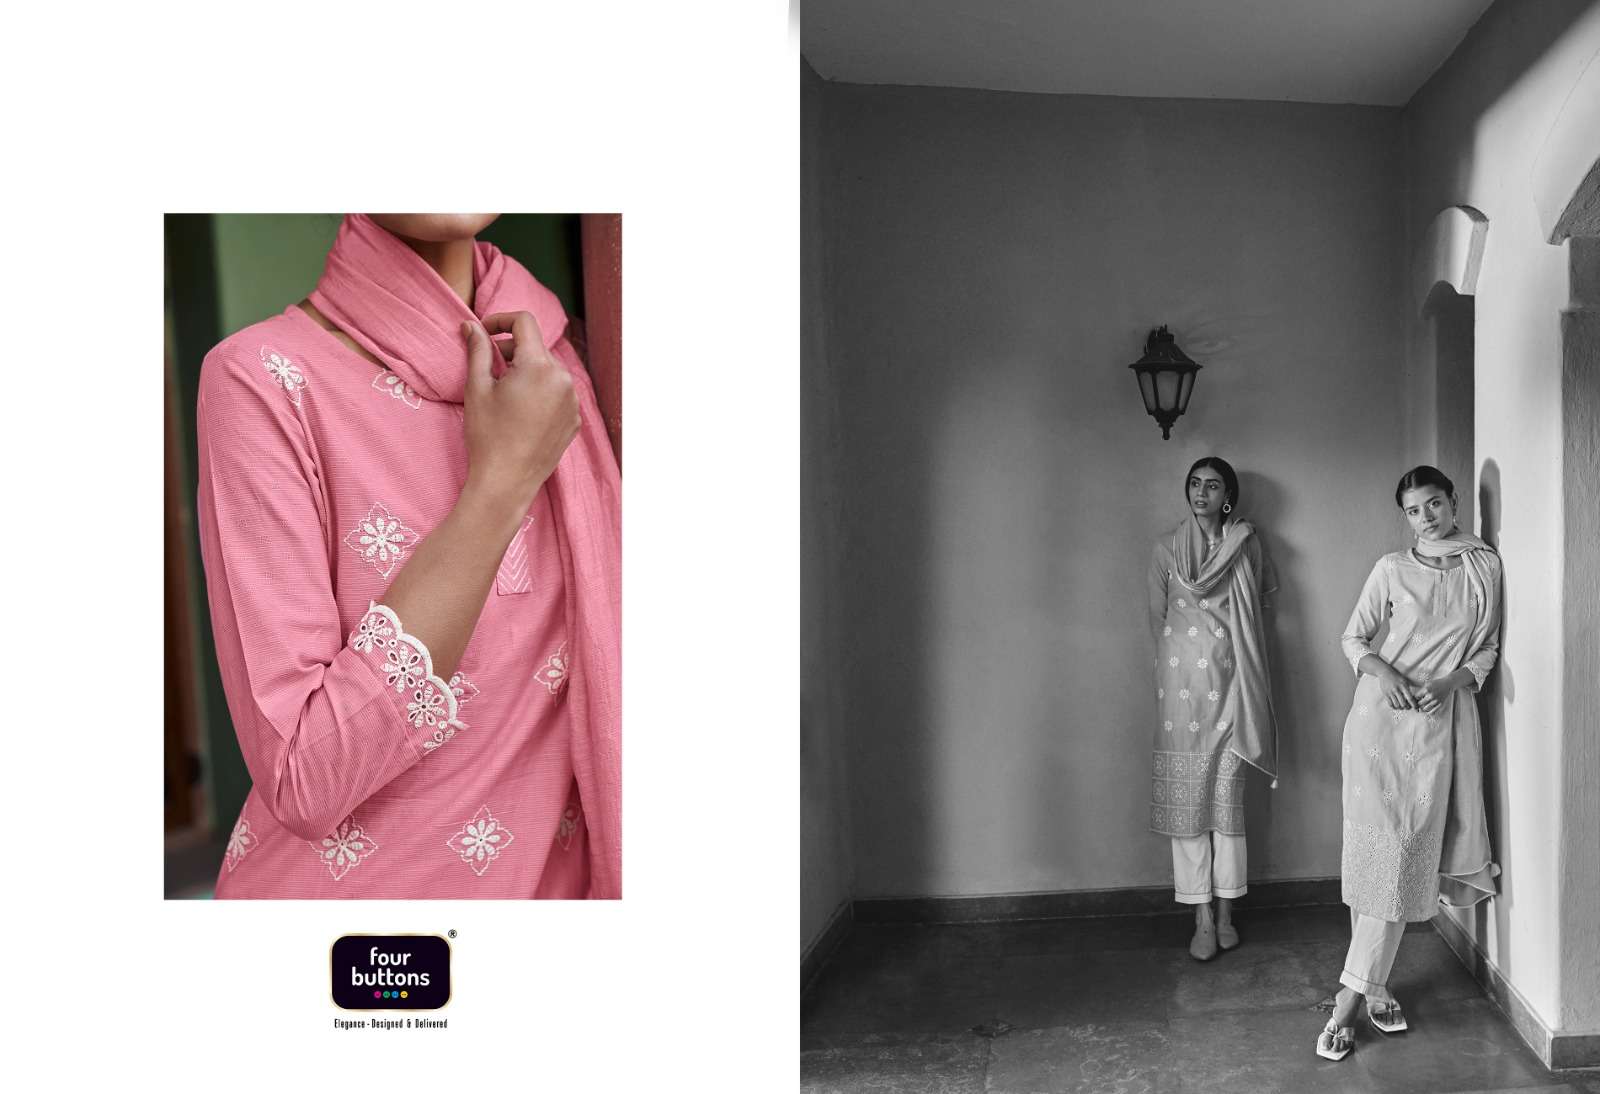 four buttons inara 3181-3186 series trendy designer kurtis catalogue online supplier surat 